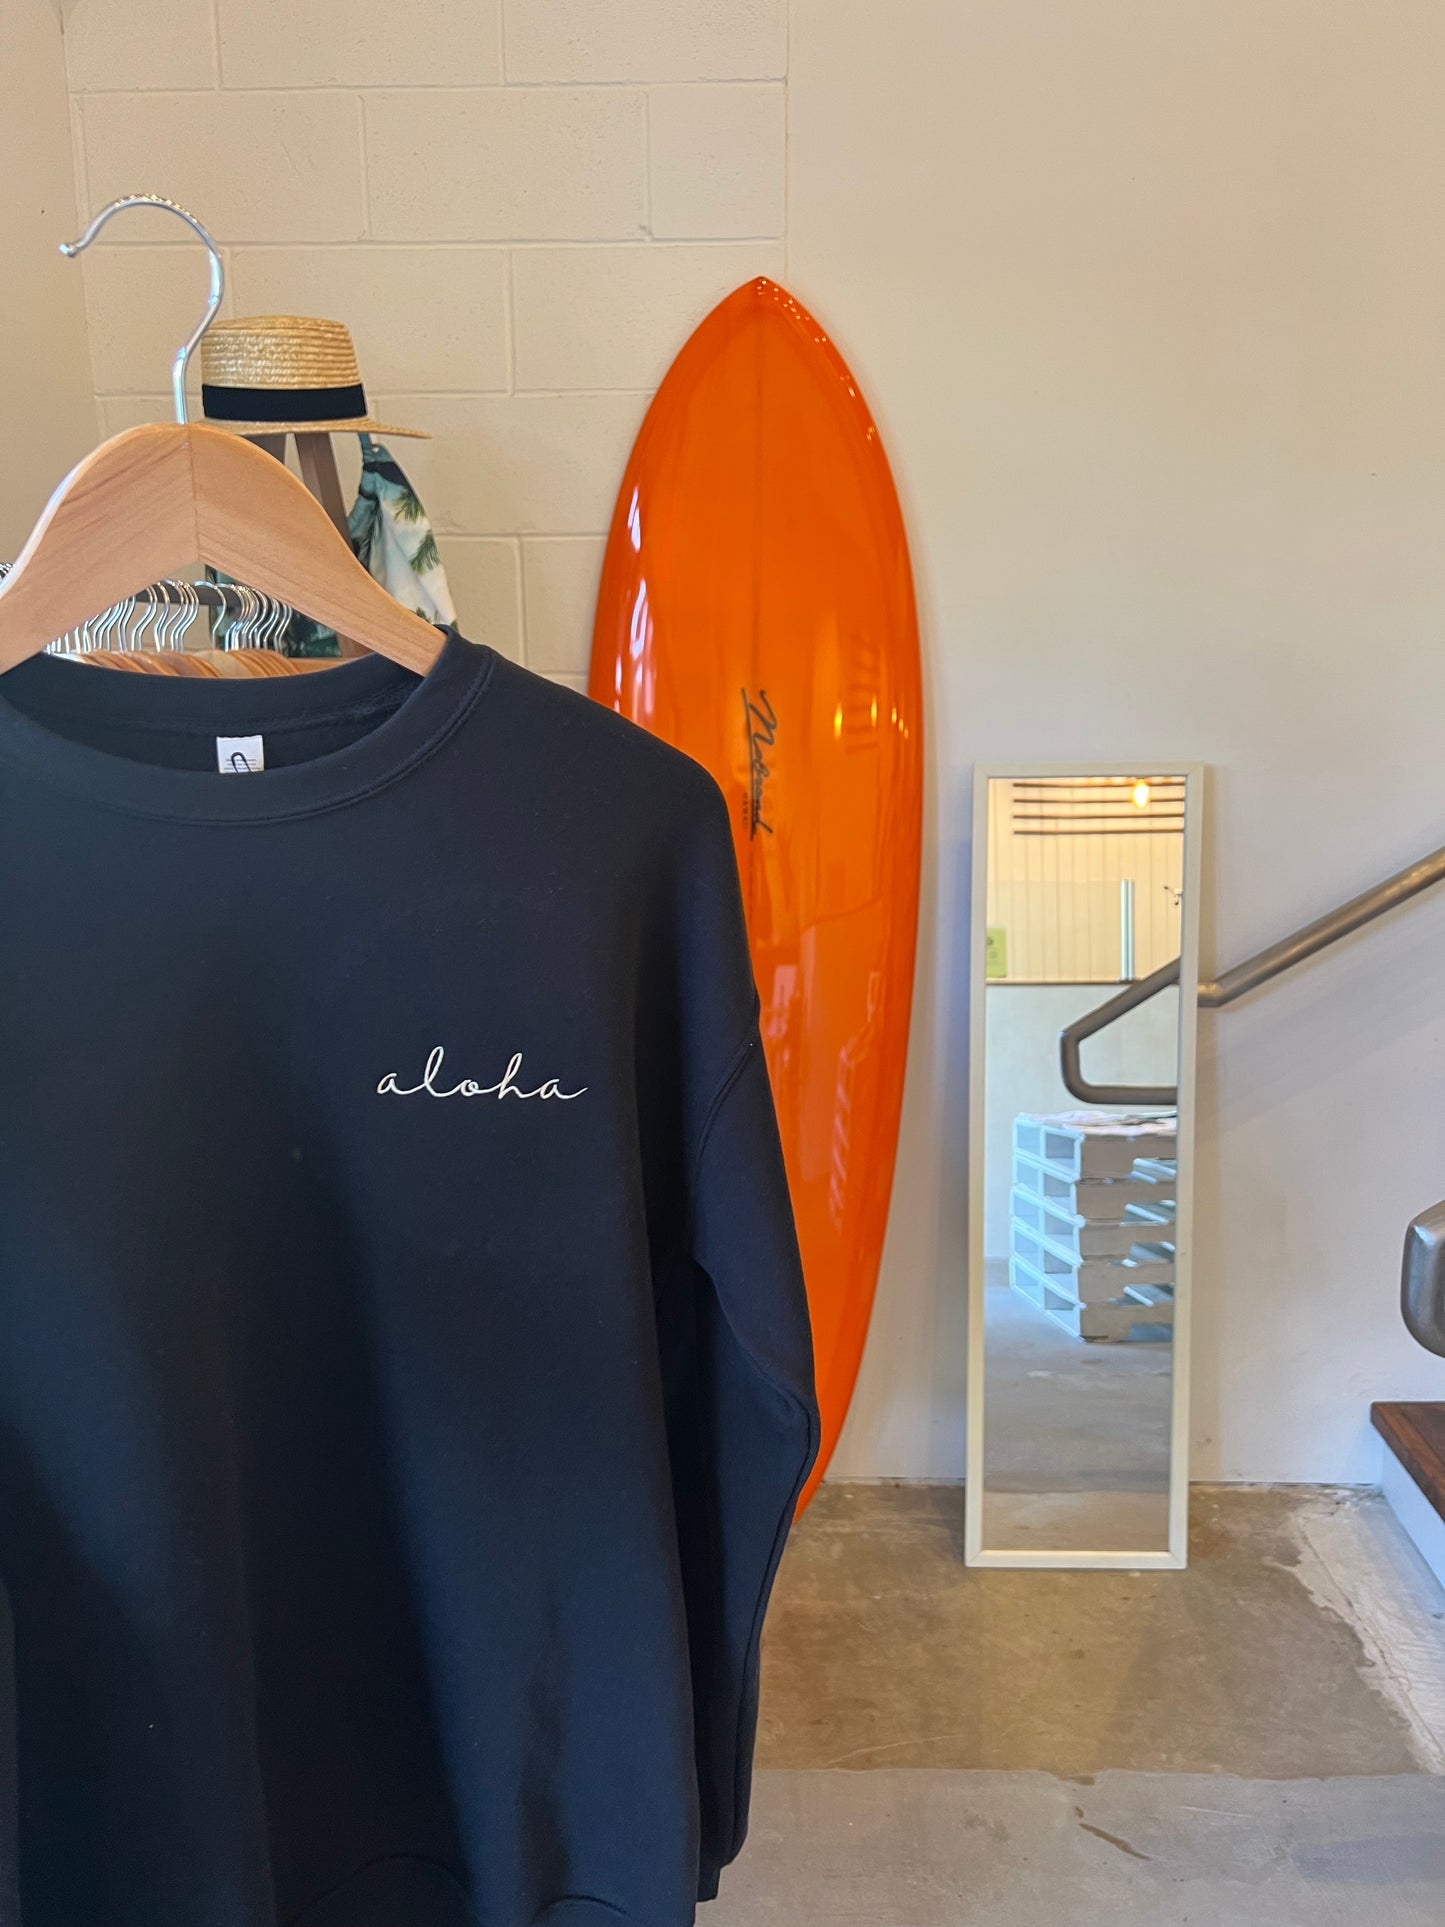 HI SURF "Aloha" long sleeve sweater